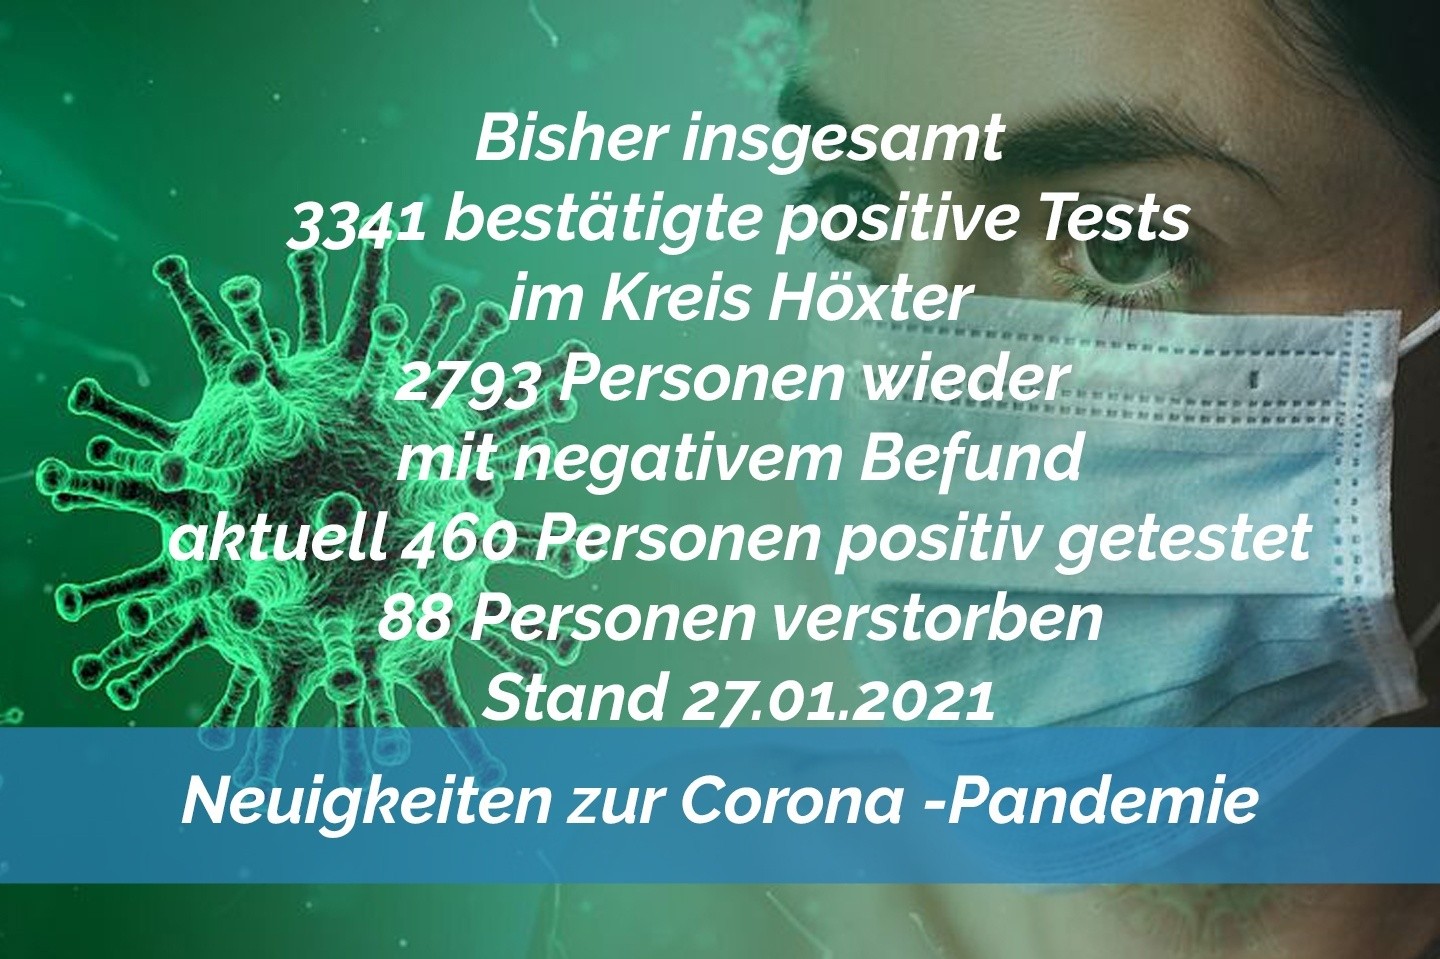 Update 27. Januar: 43 weitere amtlich positive Tests im Kreis Höxter